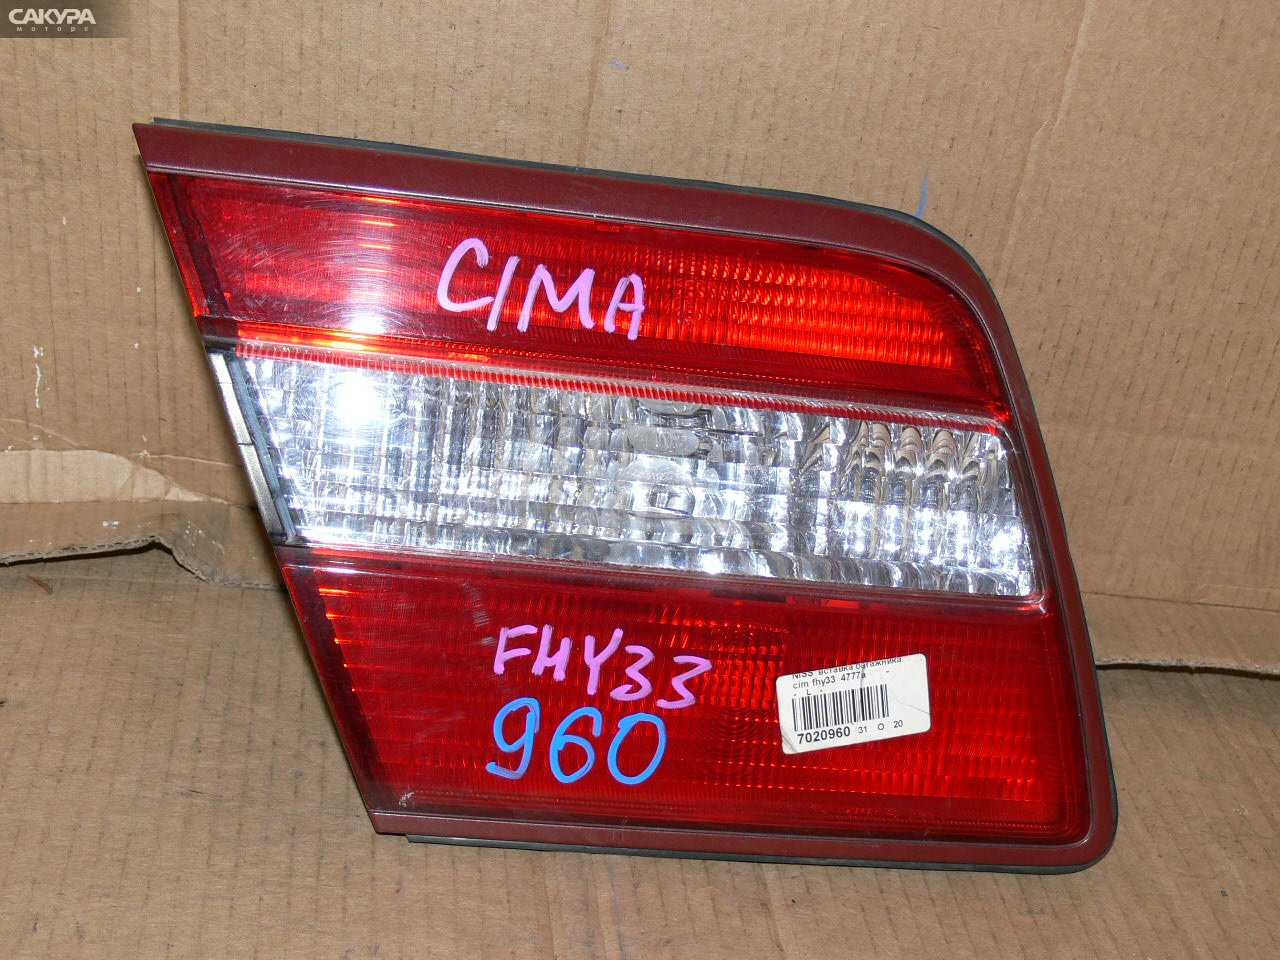 Фонарь вставка багажника левый Nissan Cima FHY33 4777A: купить в Сакура Иркутск.